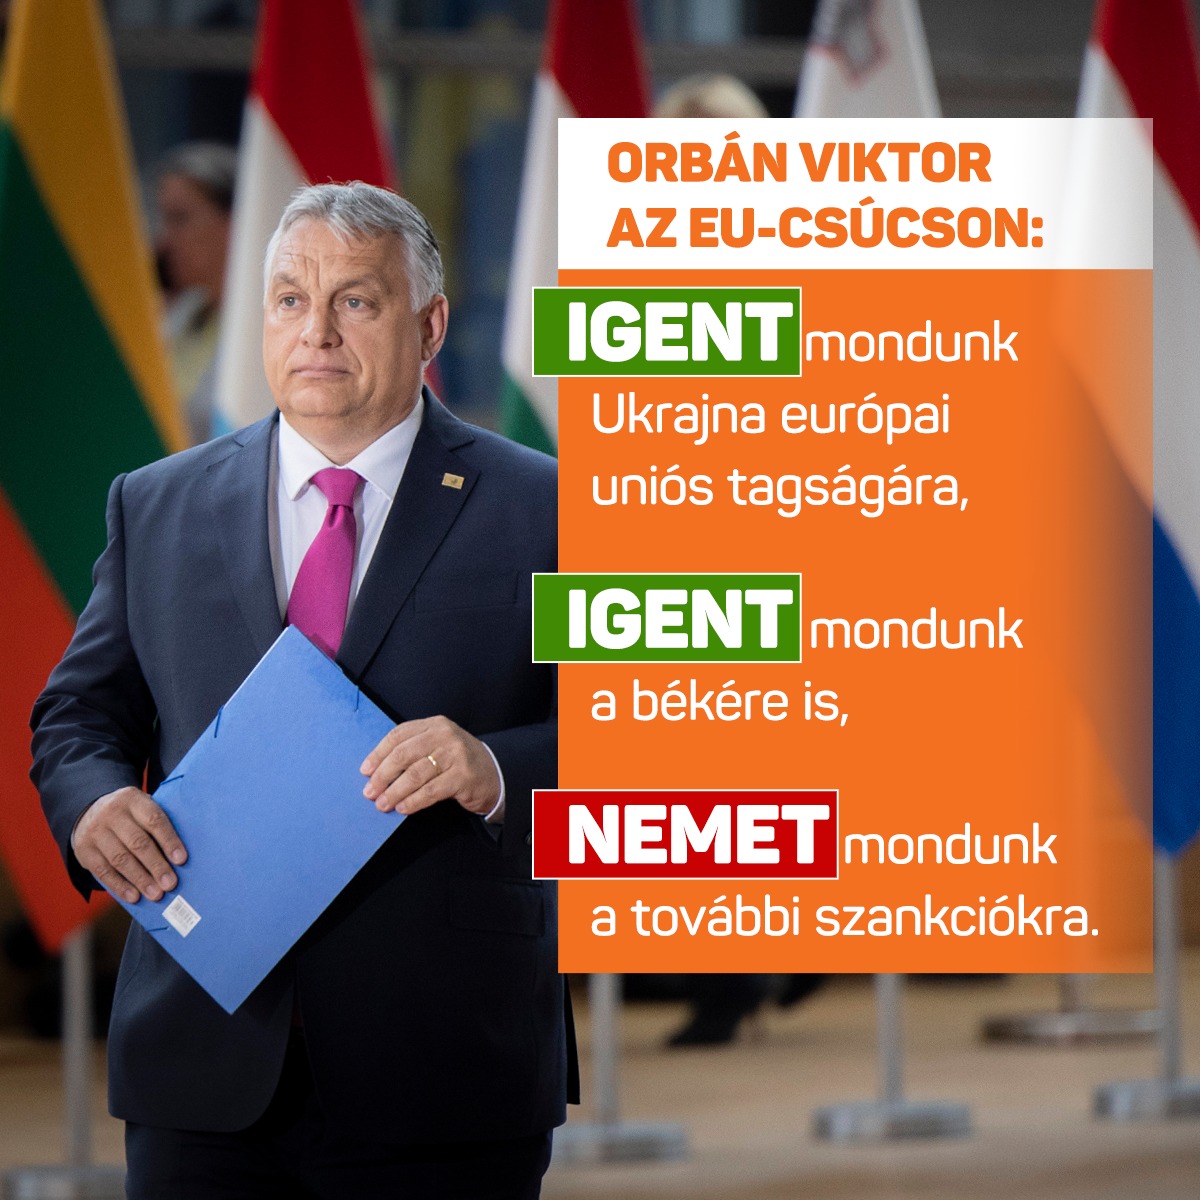 Nekünk most nem újabb szankciókra, hanem békére van szükségünk, mert a háborús infláció egyetlen ellenszere a béke – mondta Orbán Viktor az Európai Unió kétnapos csúcstalálkozójának első napján.